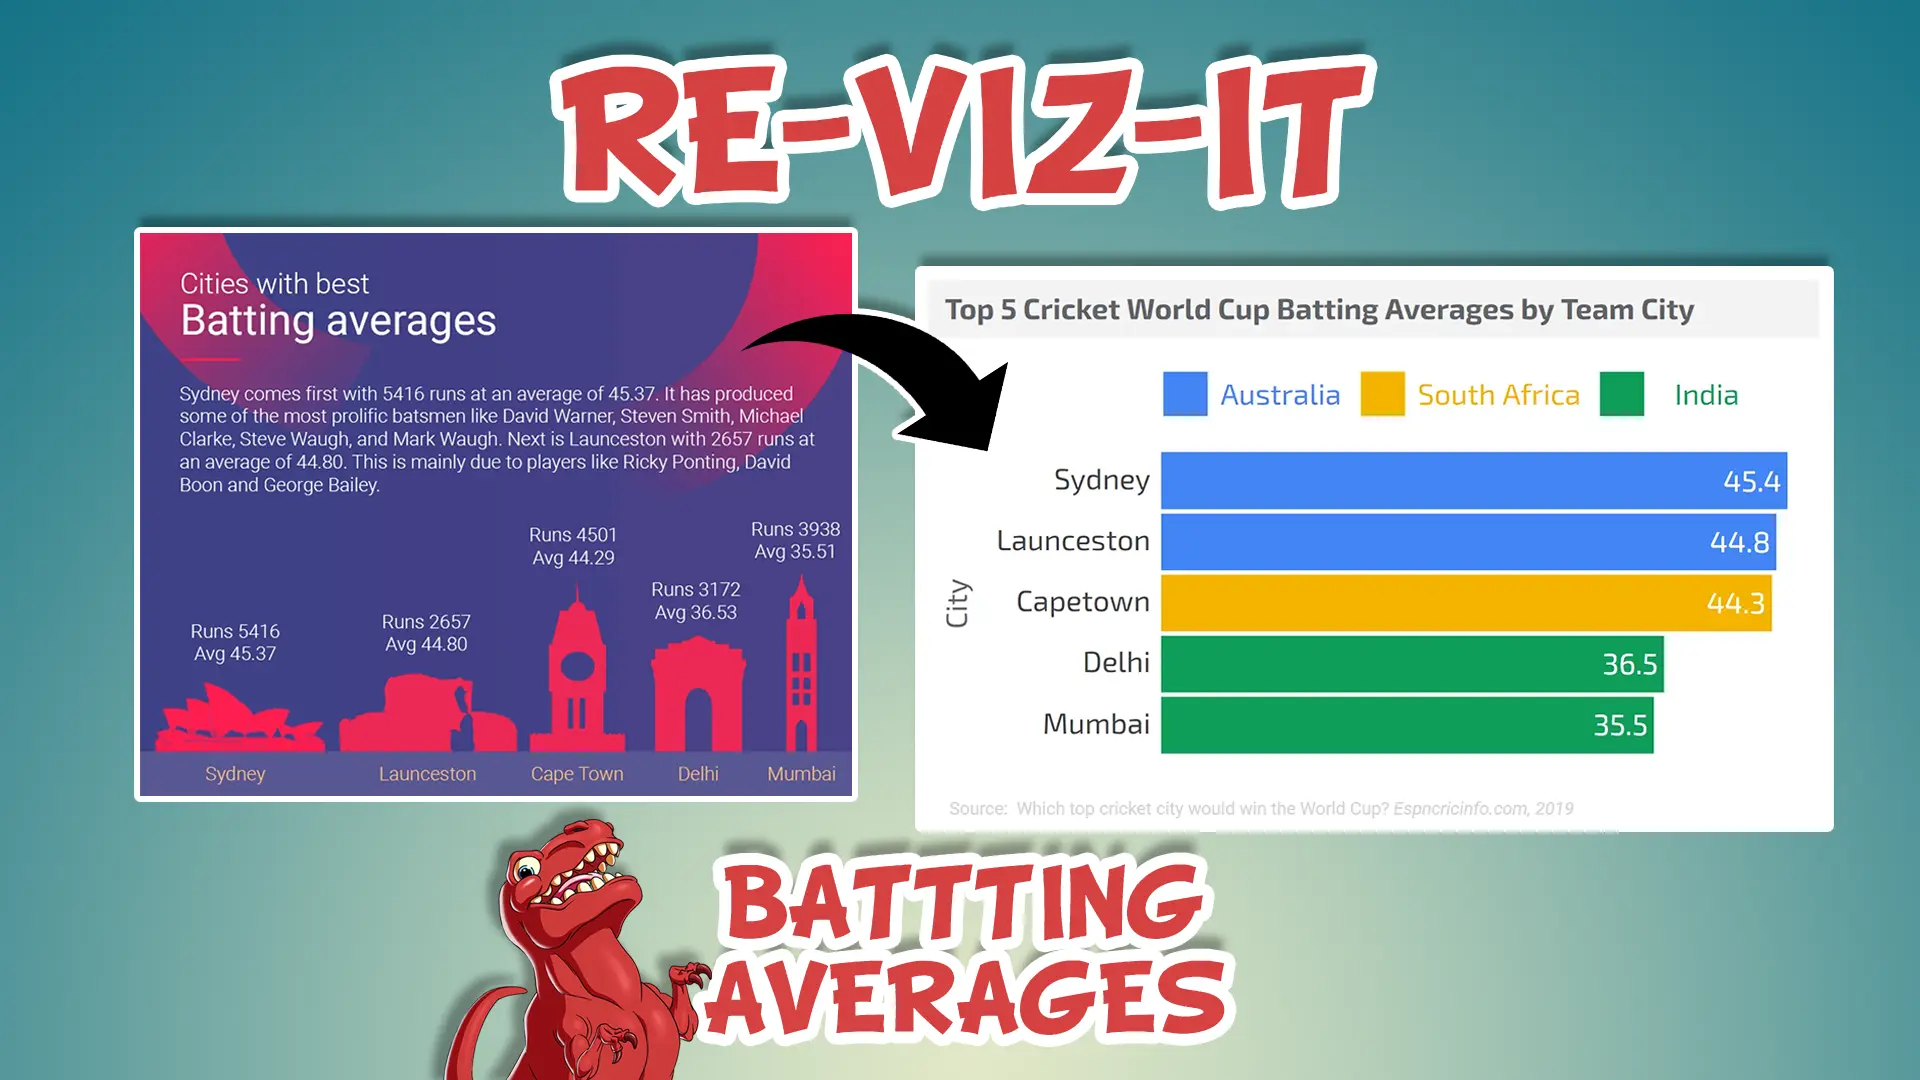 Batting Averages Re-Viz-It YouTube Thumbnail